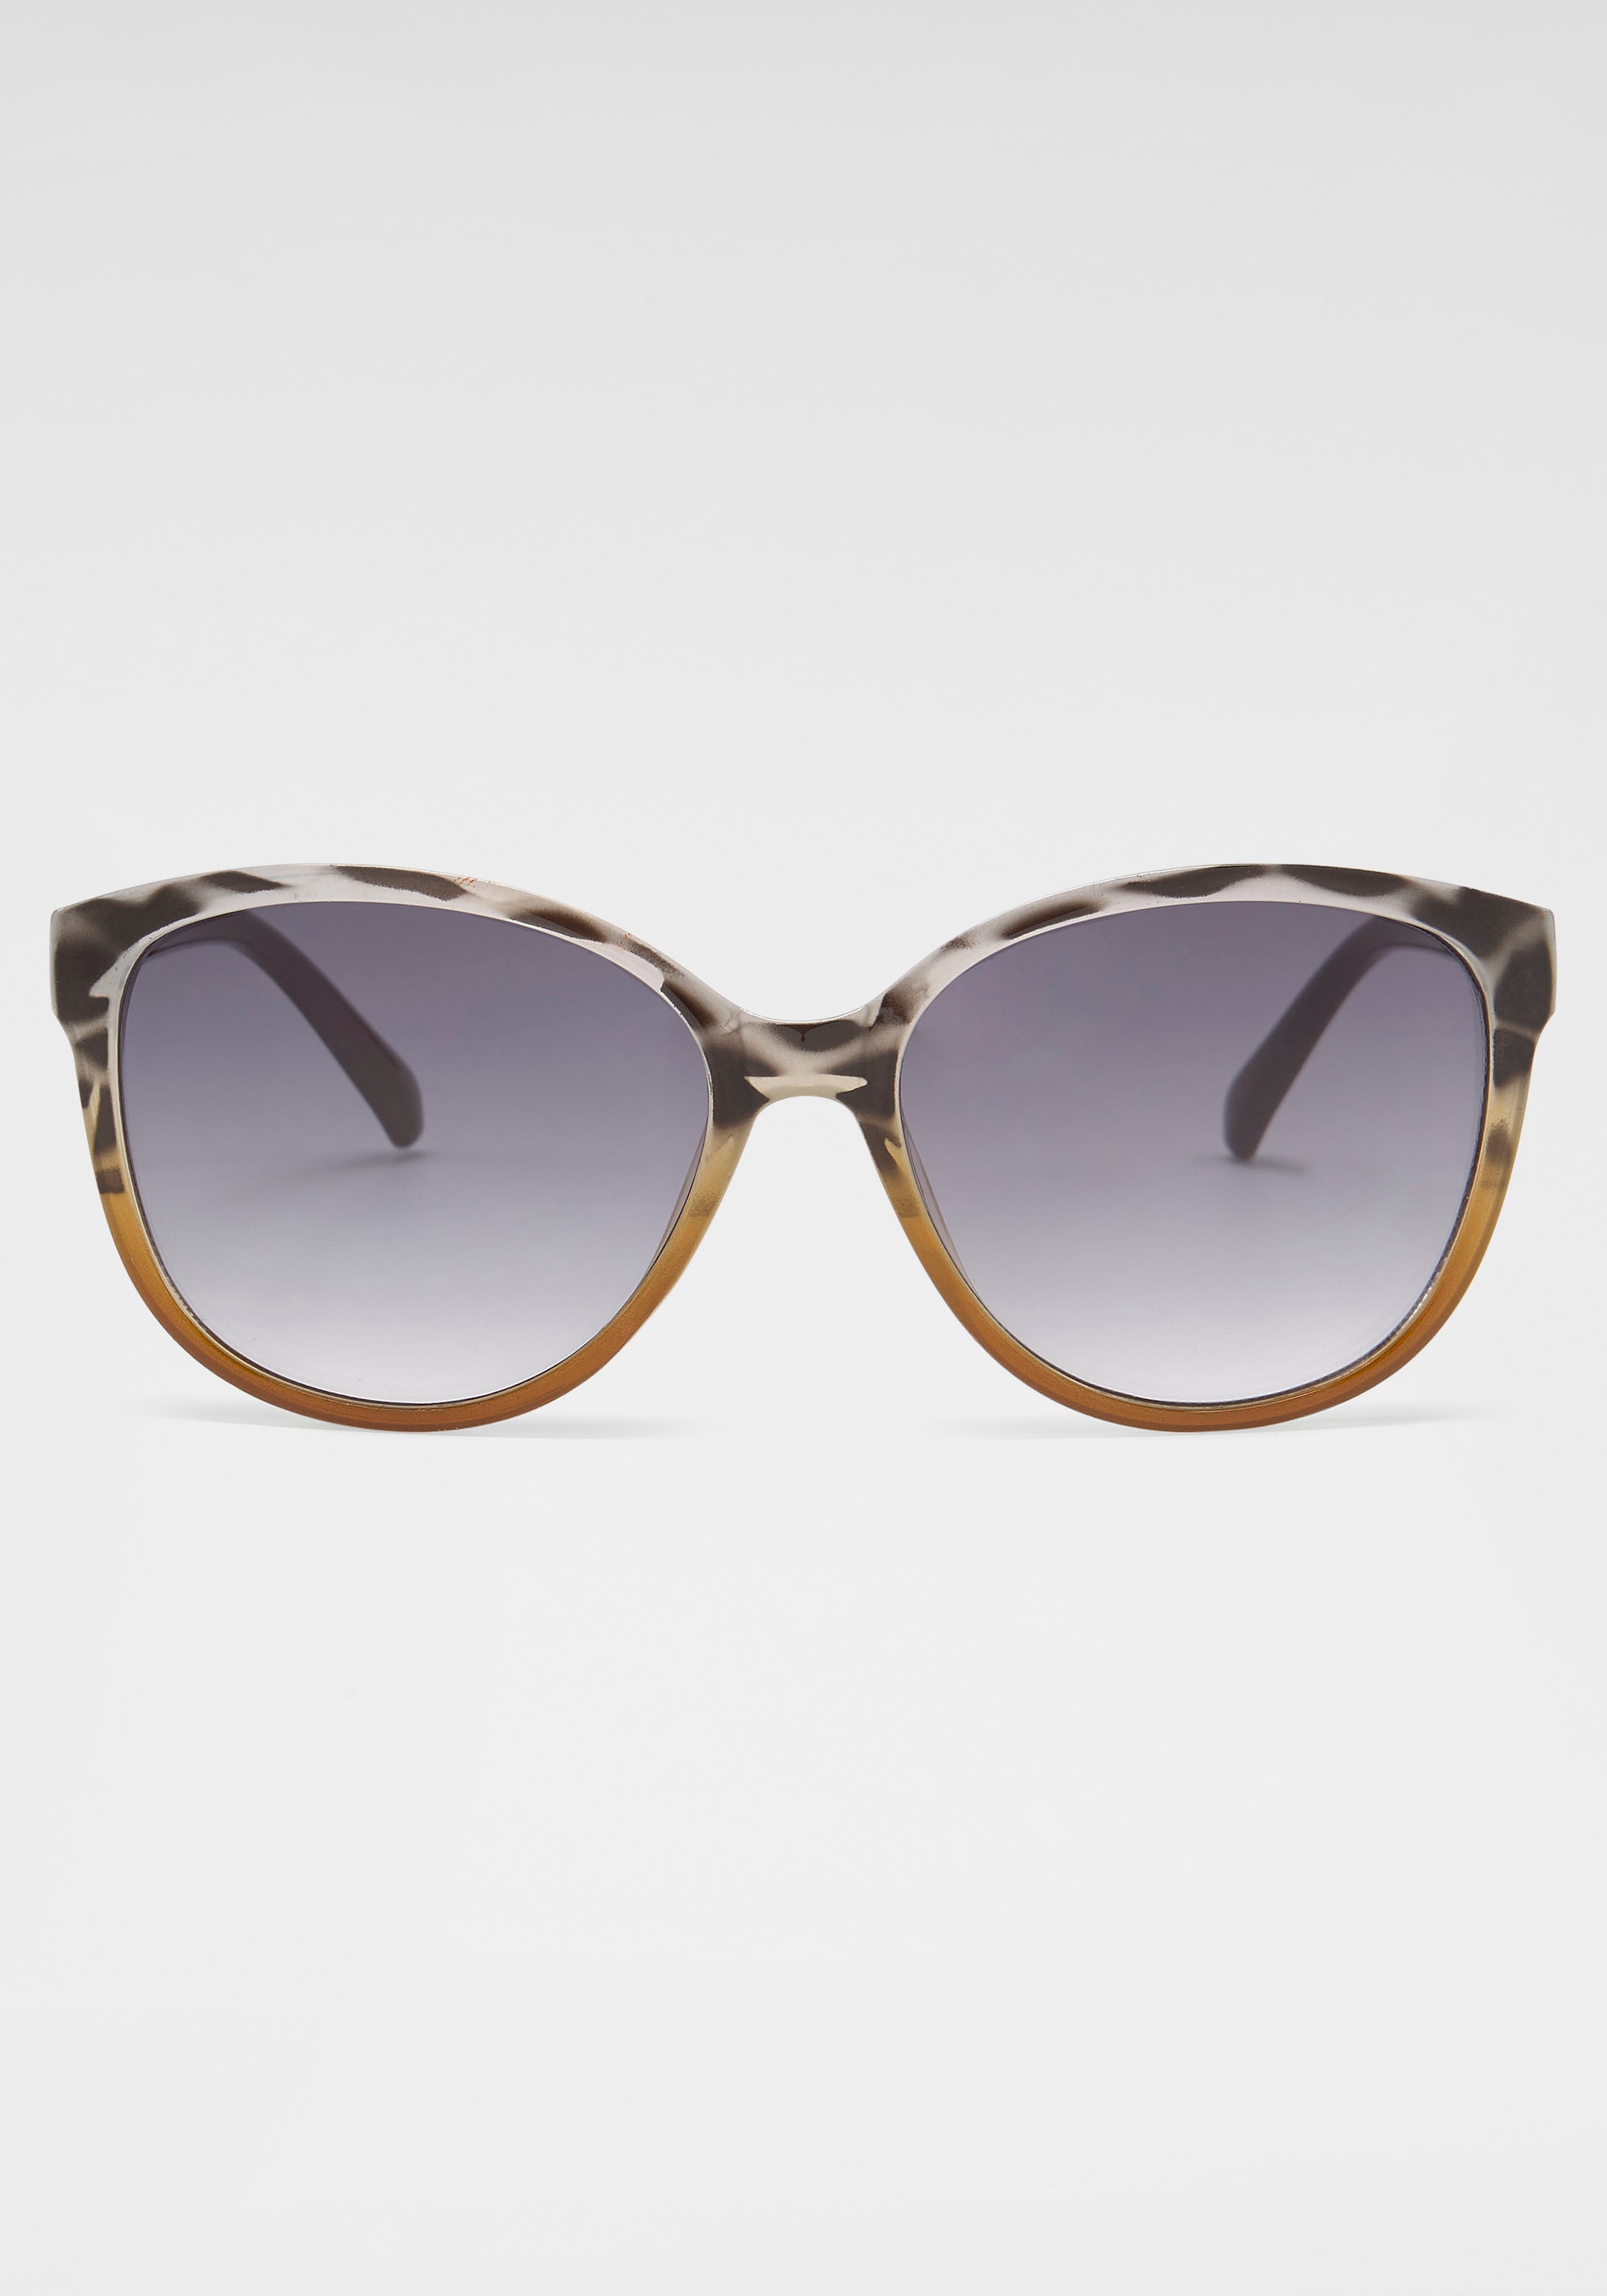 online Schweiz bestellen Sonnenbrille Eyewear Jelmoli-Versand catwalk bei